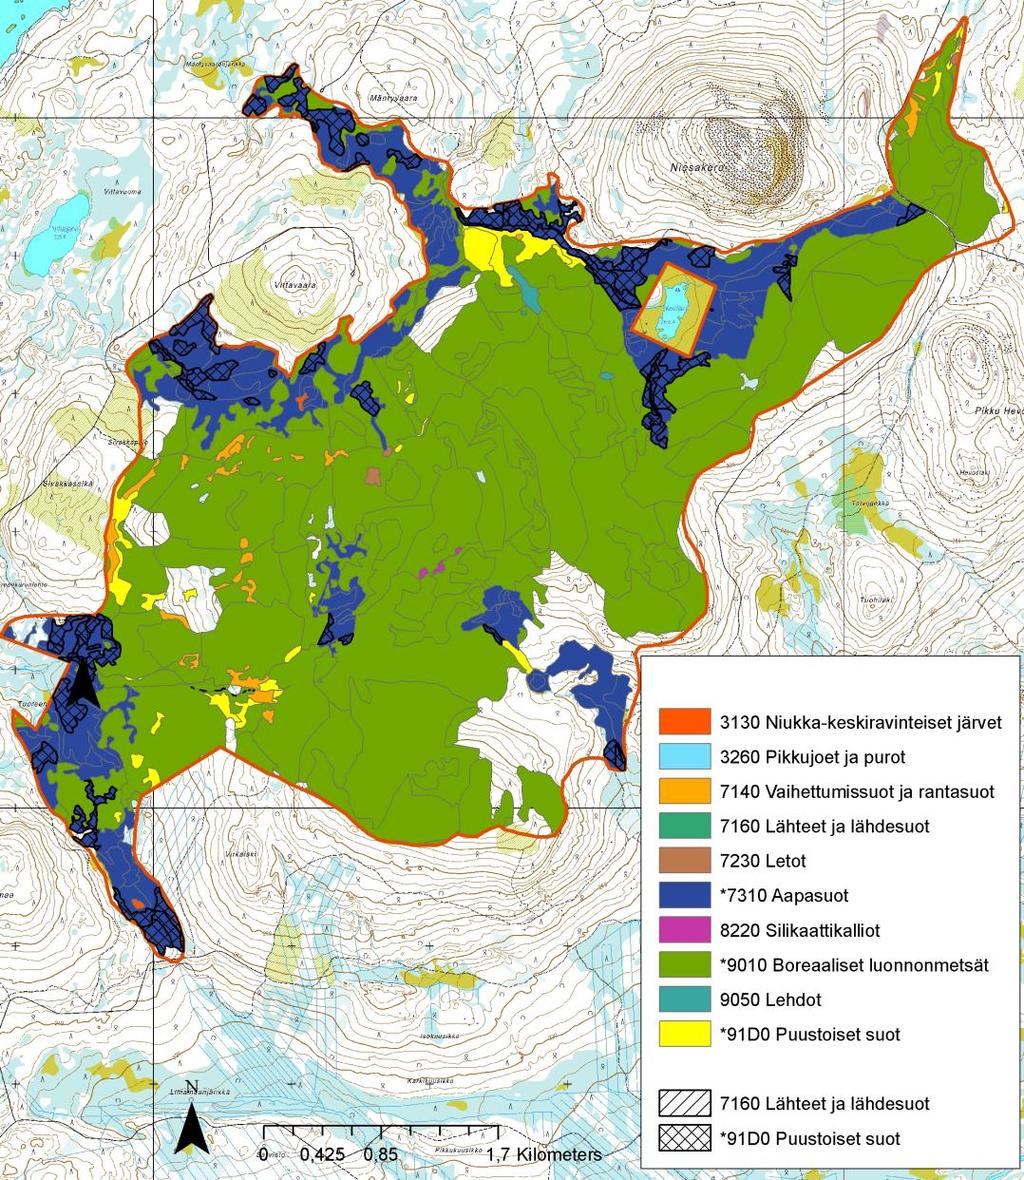 26 Tabell 7-1 Naturtyper i habitatdirektivets bilaga I på Niesaselkä Naturaområde. * = prioriterad naturtyp, som alltså primärt ska skyddas.